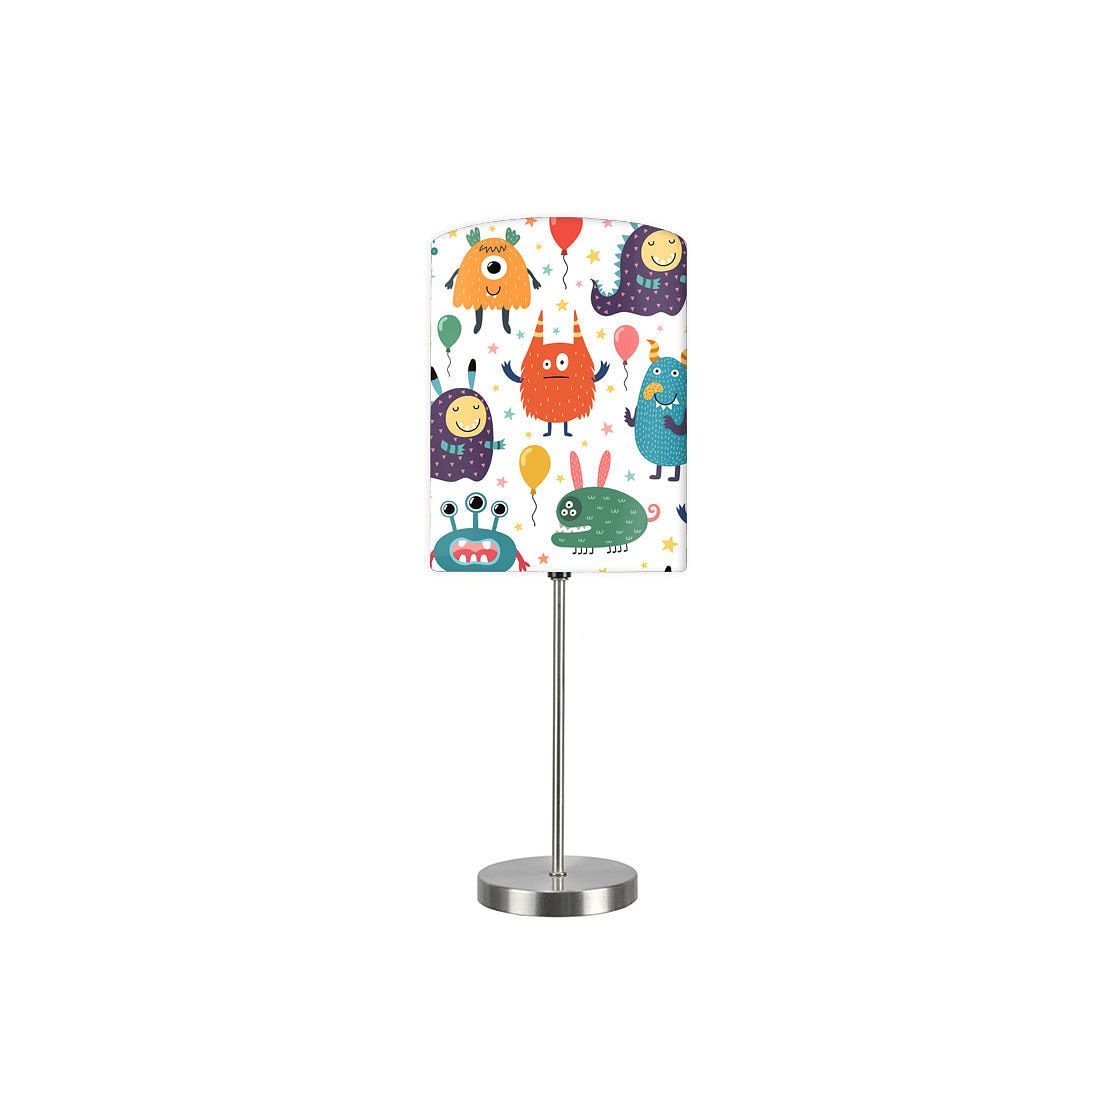 Pretty Designer Kids Room Lights Lamps - 0001 Nutcase